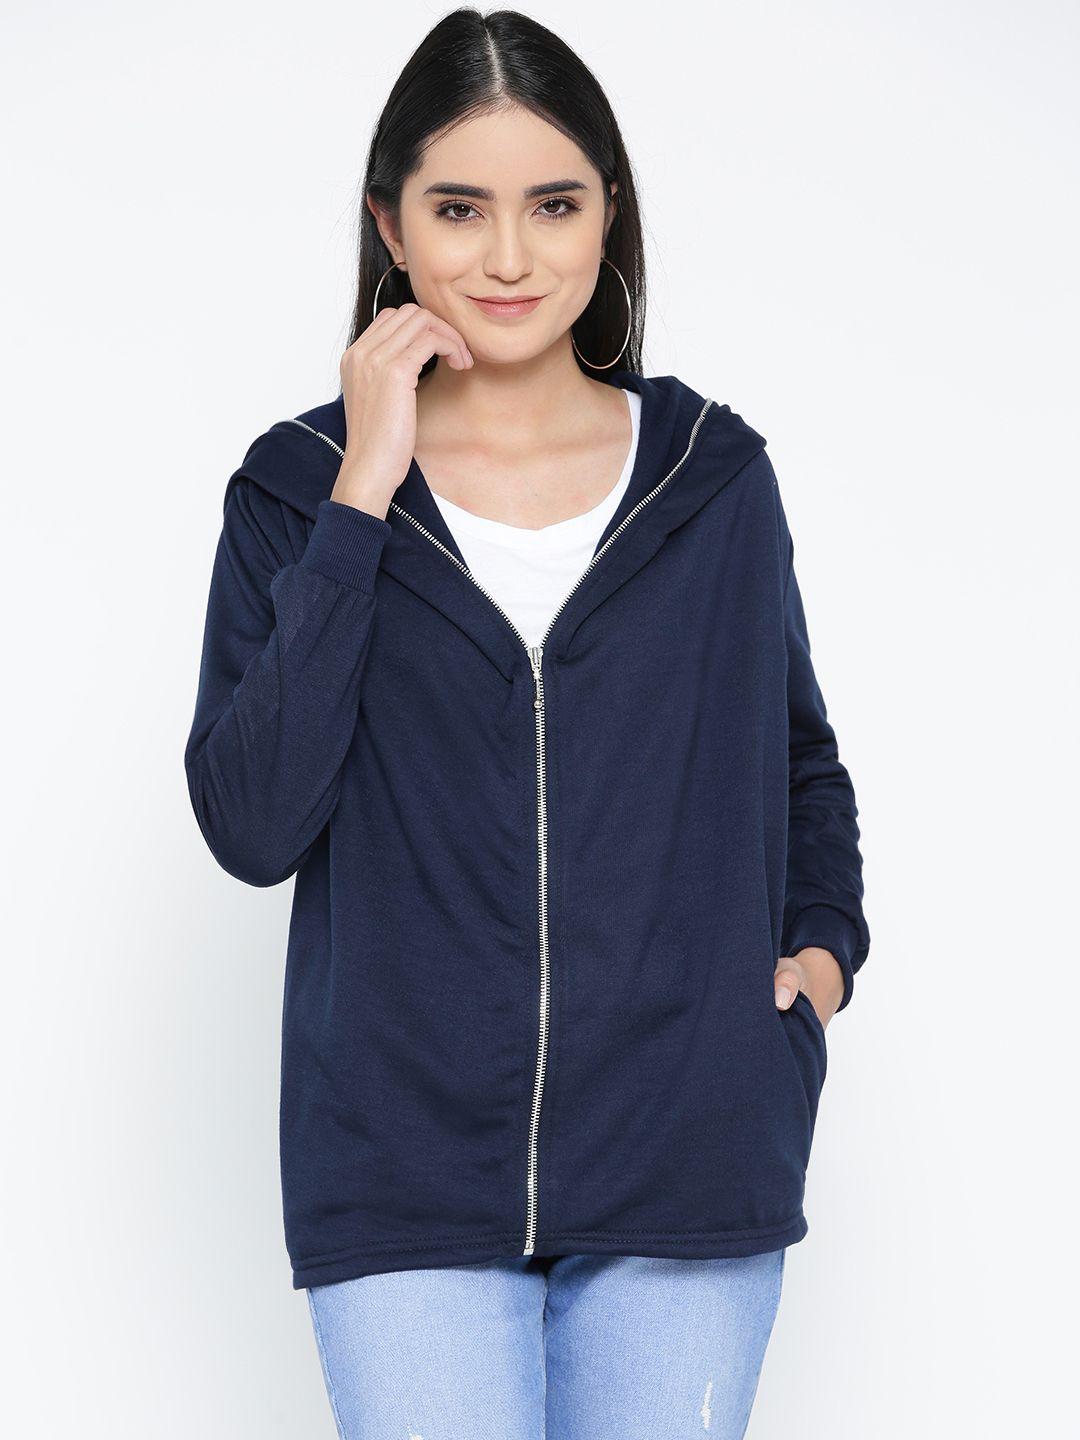 belle-fille-women-navy-blue-solid-hooded-sweatshirt